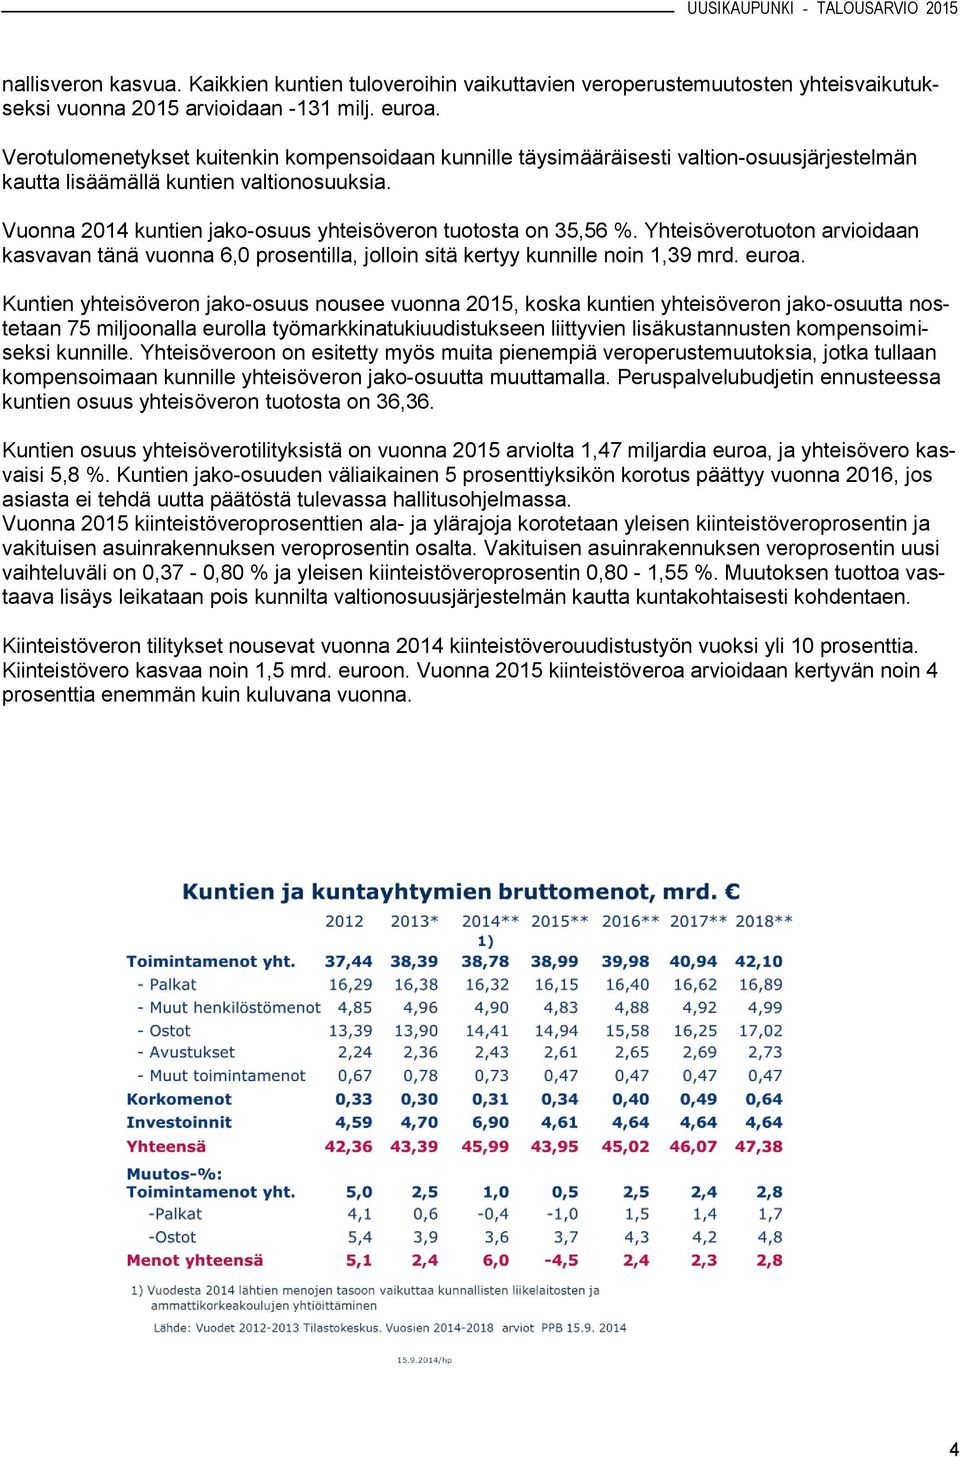 Vuonna 2014 kuntien jako-osuus yhteisöveron tuotosta on 35,56 %. Yhteisöverotuoton arvioidaan kasvavan tänä vuonna 6,0 prosentilla, jolloin sitä kertyy kunnille noin 1,39 mrd. euroa.